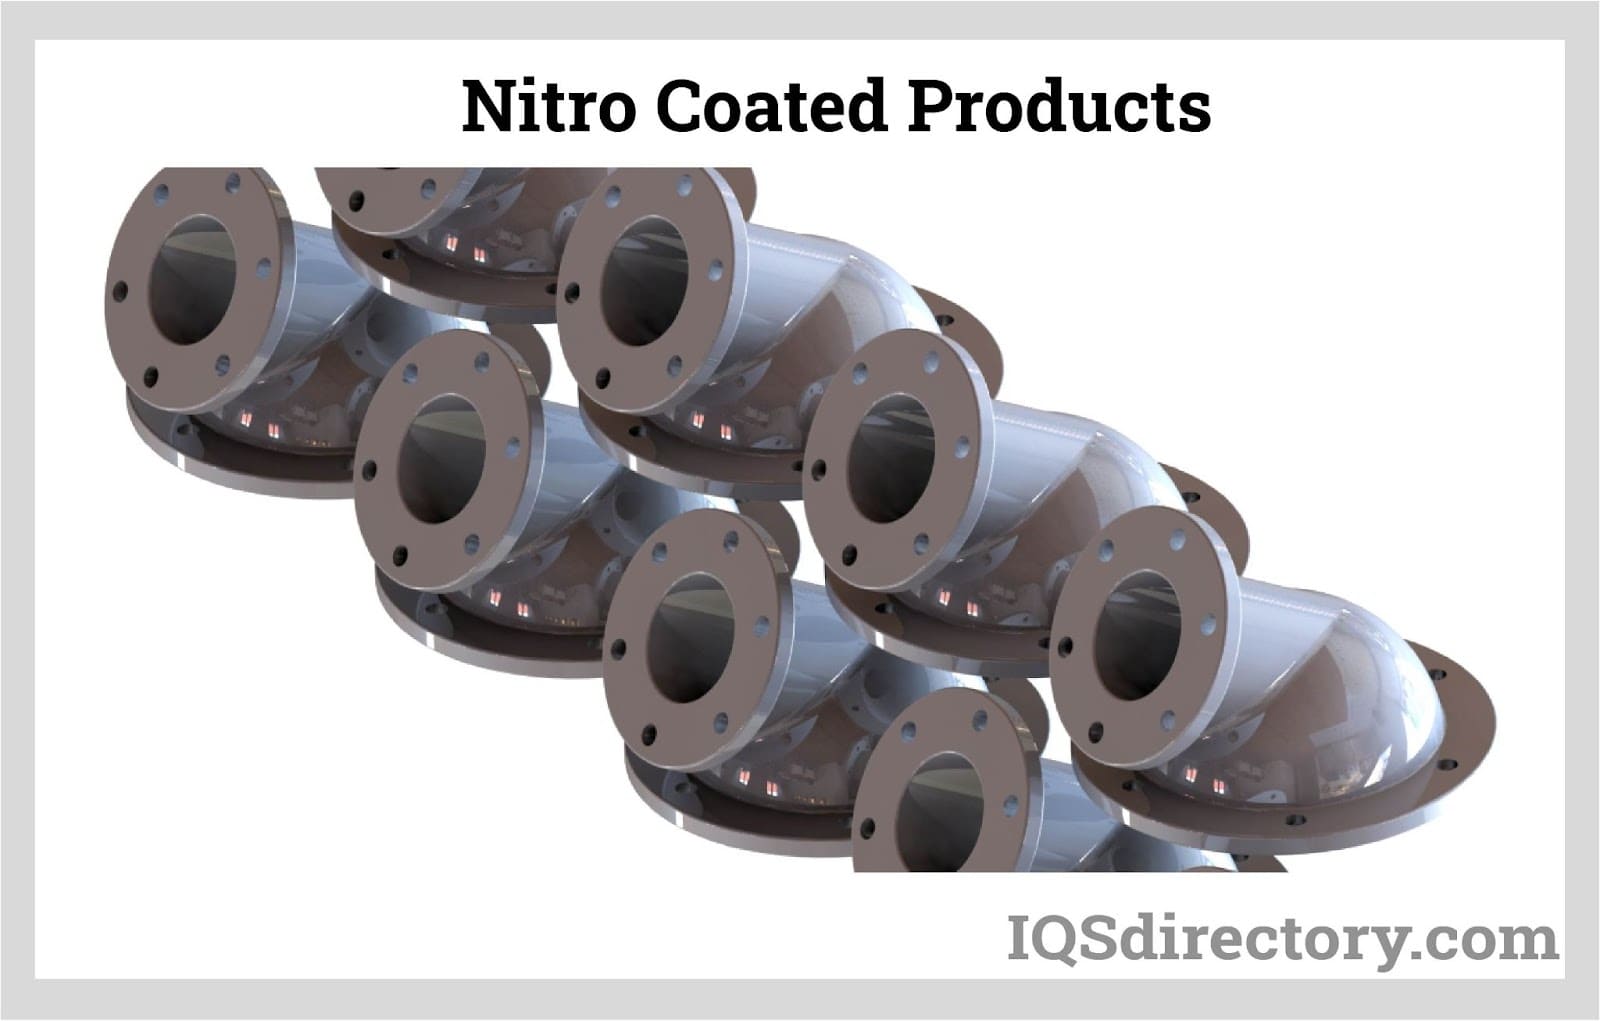 Nitro Coated Products